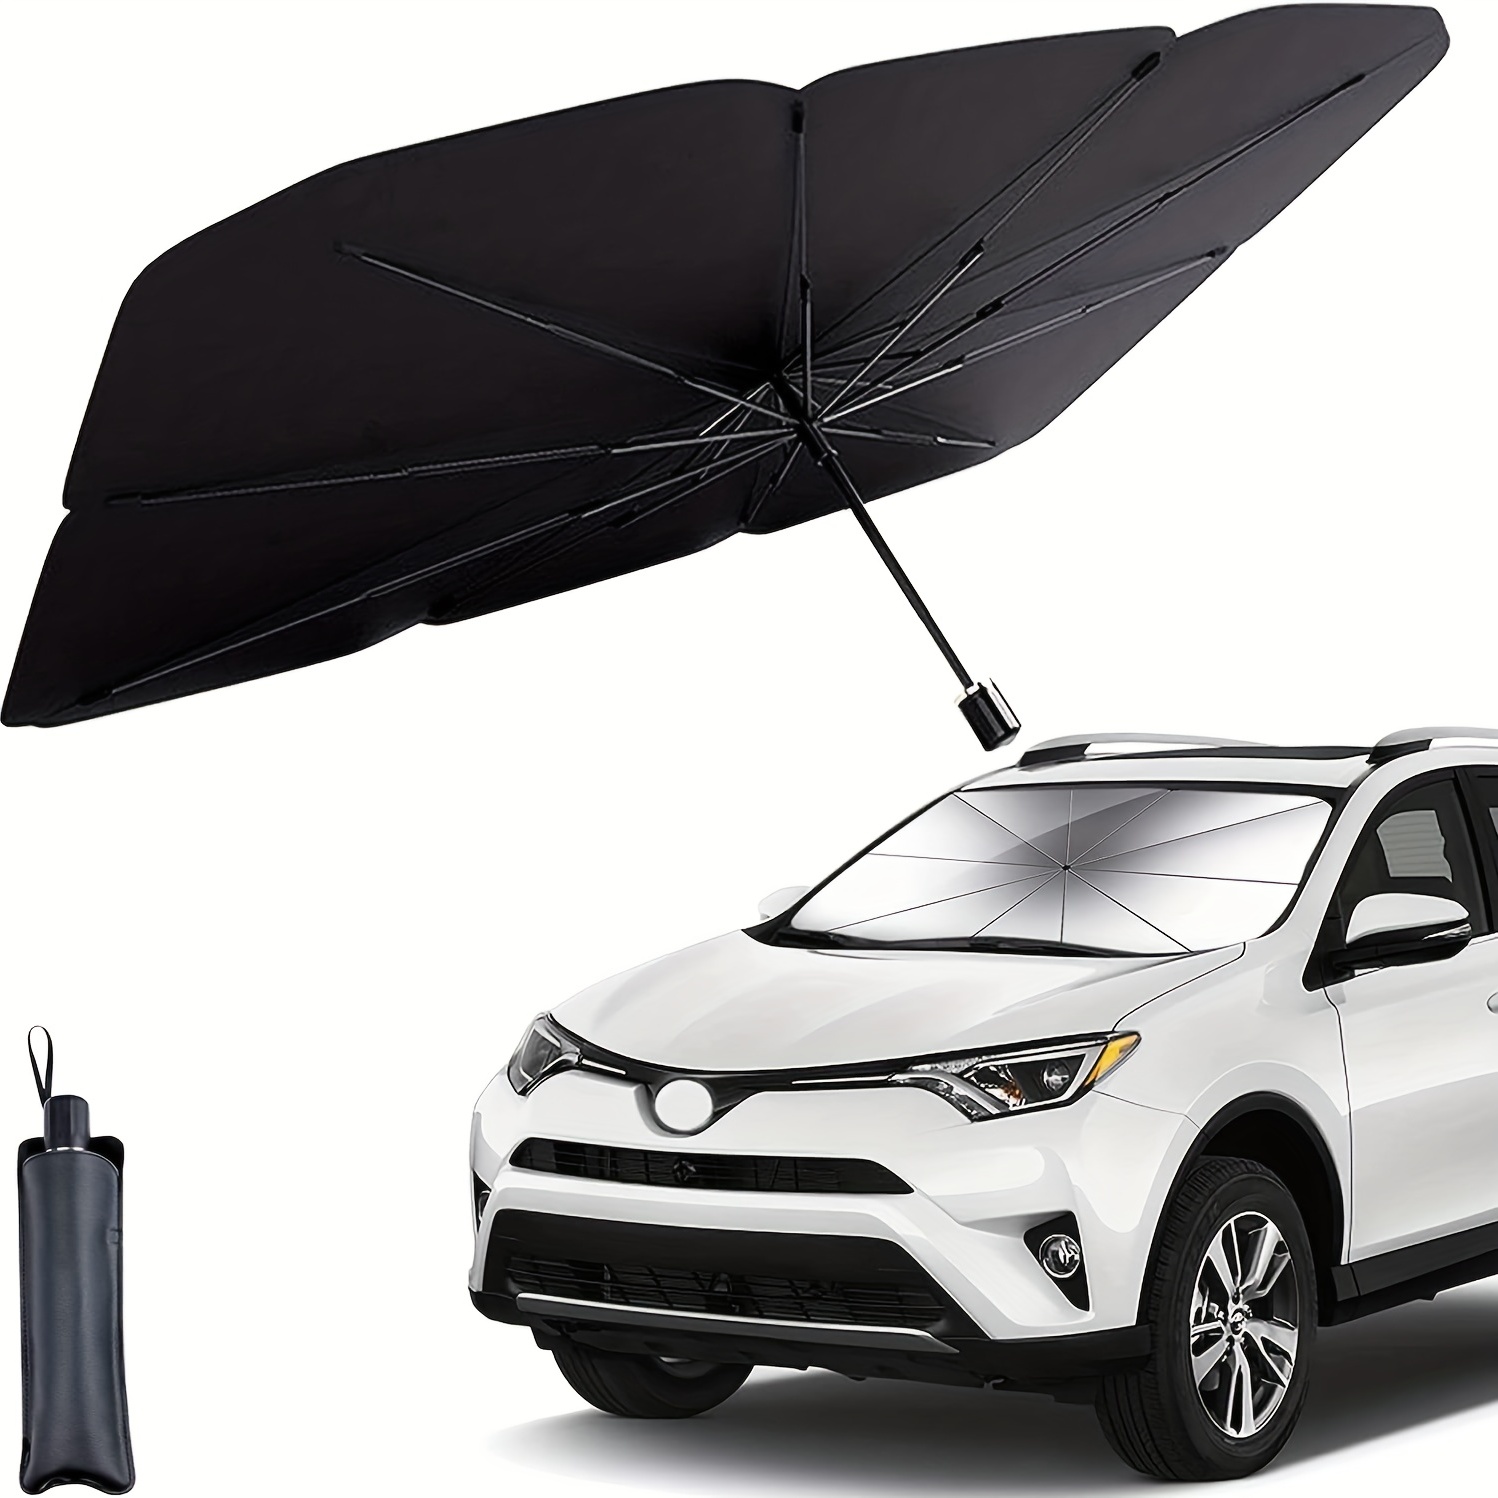 Parasol para parabrisas delantero de coche, parasol para parabrisas de coche,  parasol plegable para parabrisas de coche, se adapta a varios tamaños (56'  x 31')